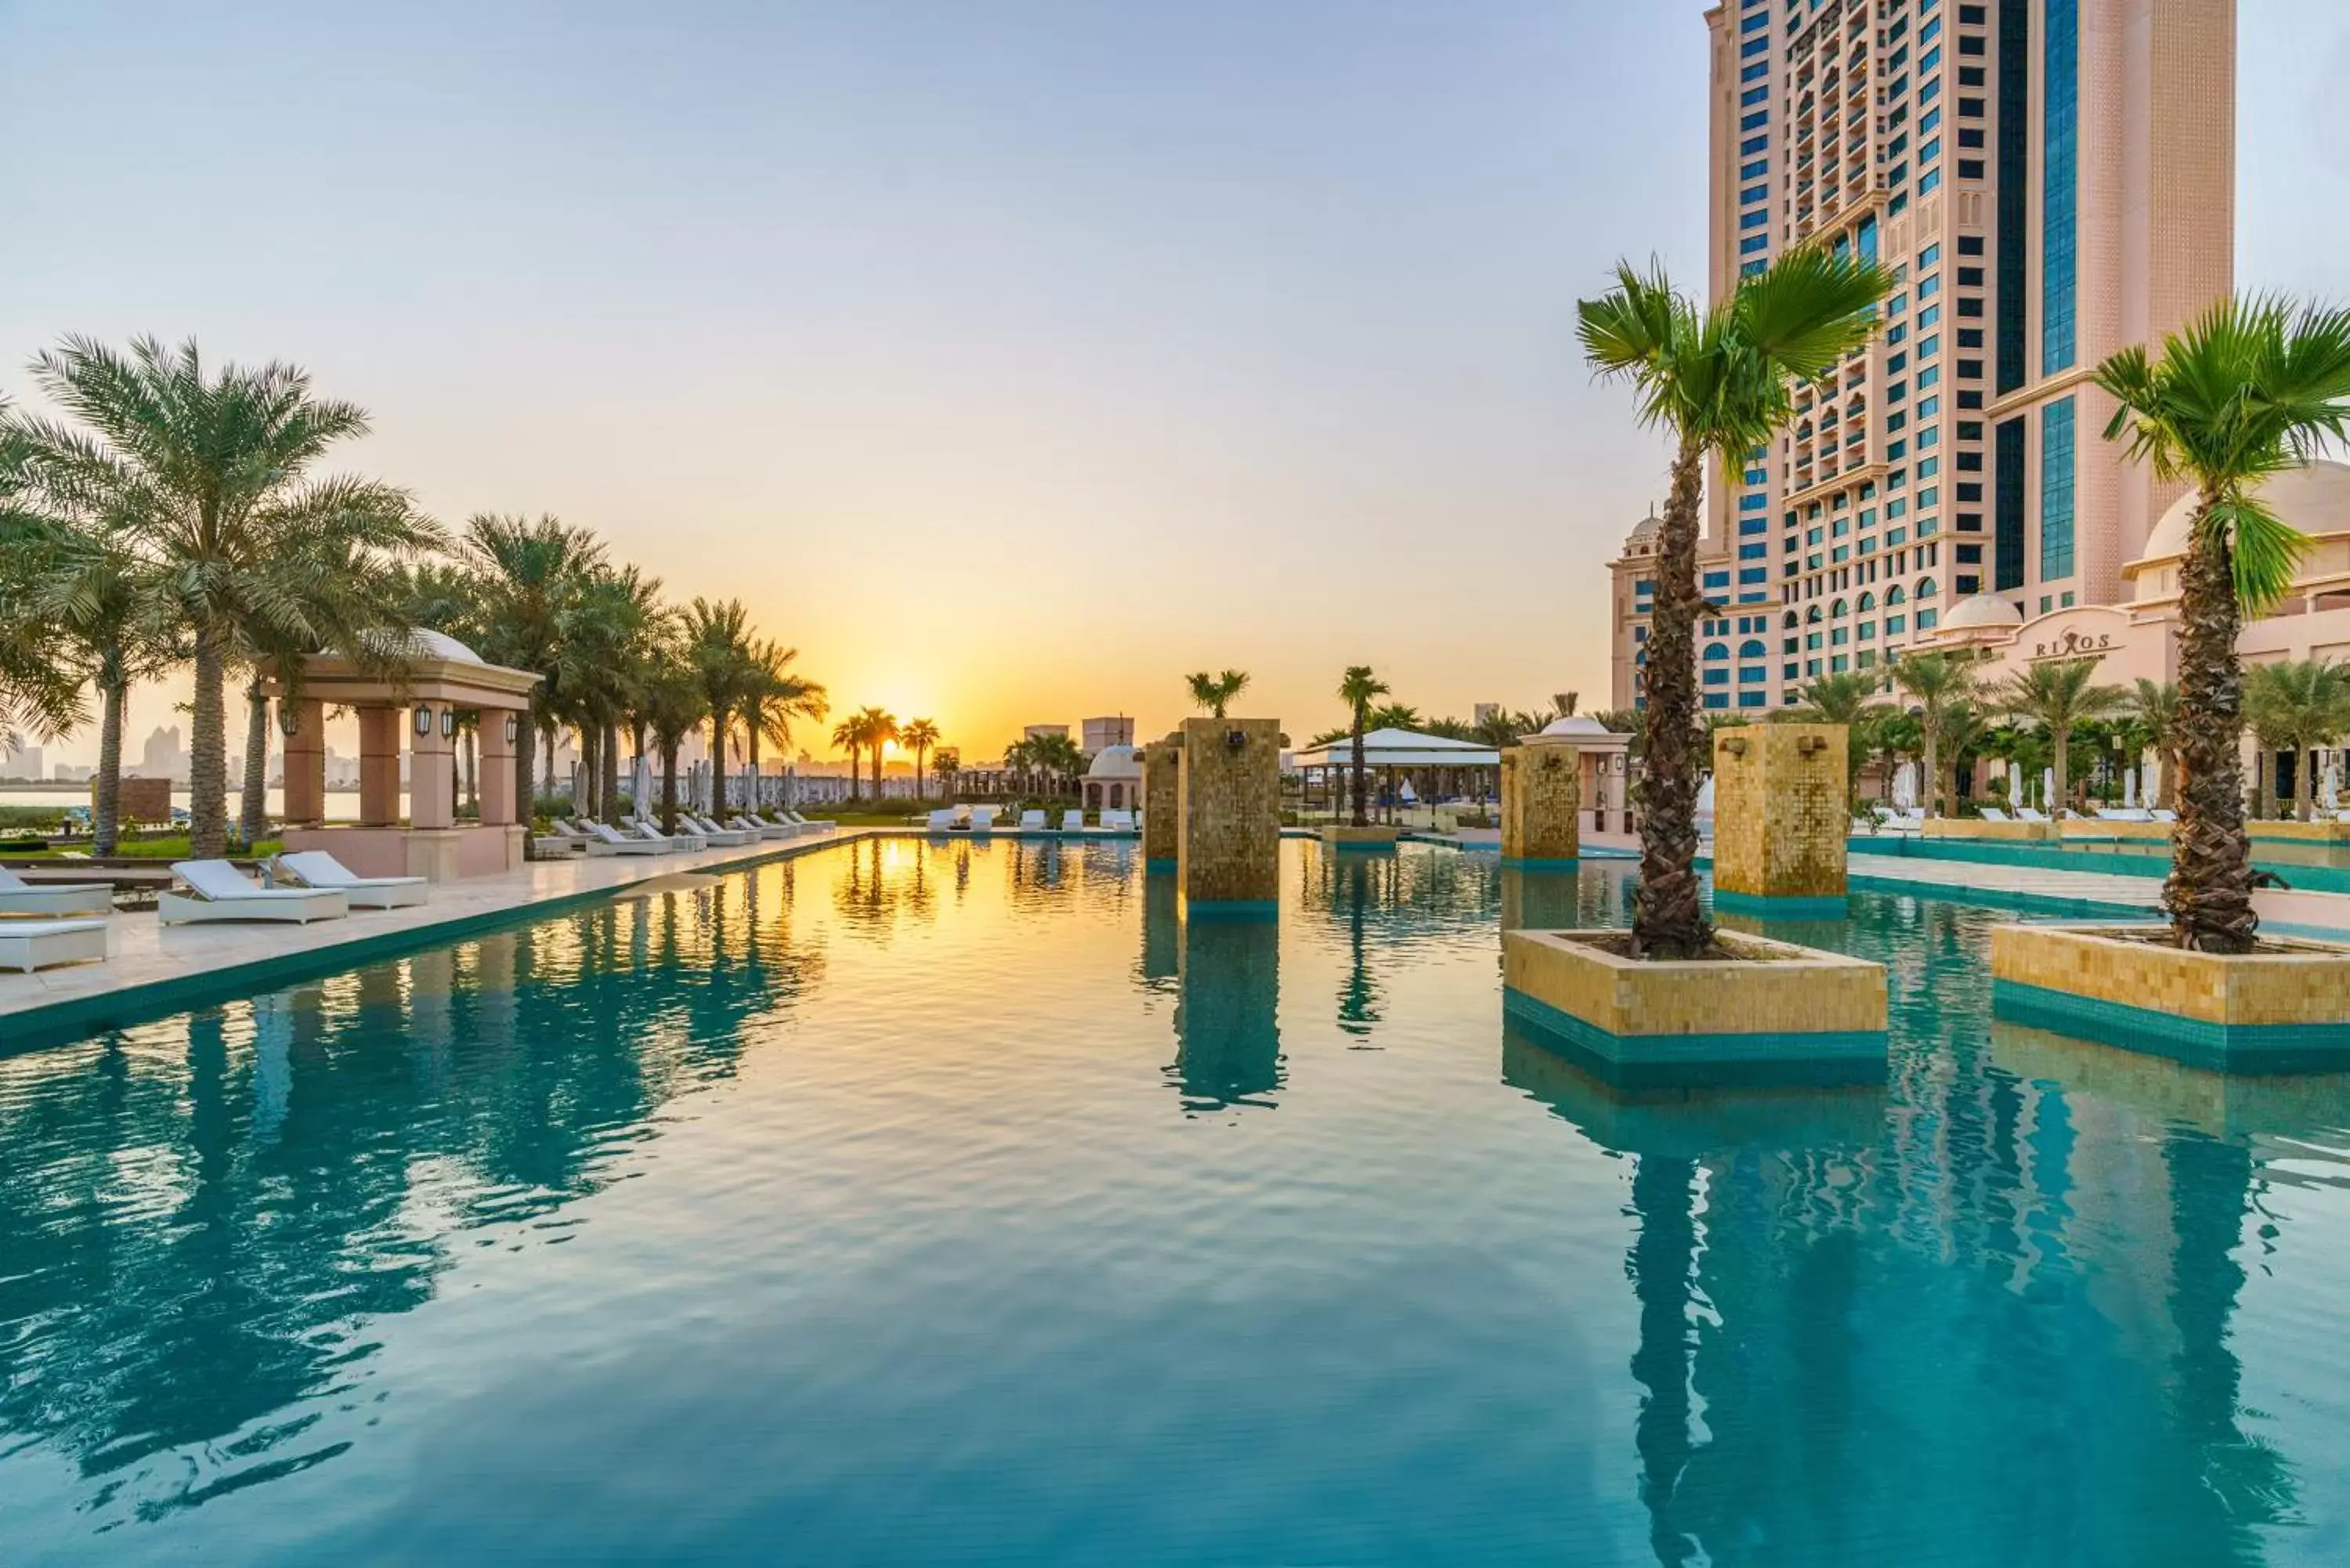 Swimming Pool in Rixos Marina Abu Dhabi